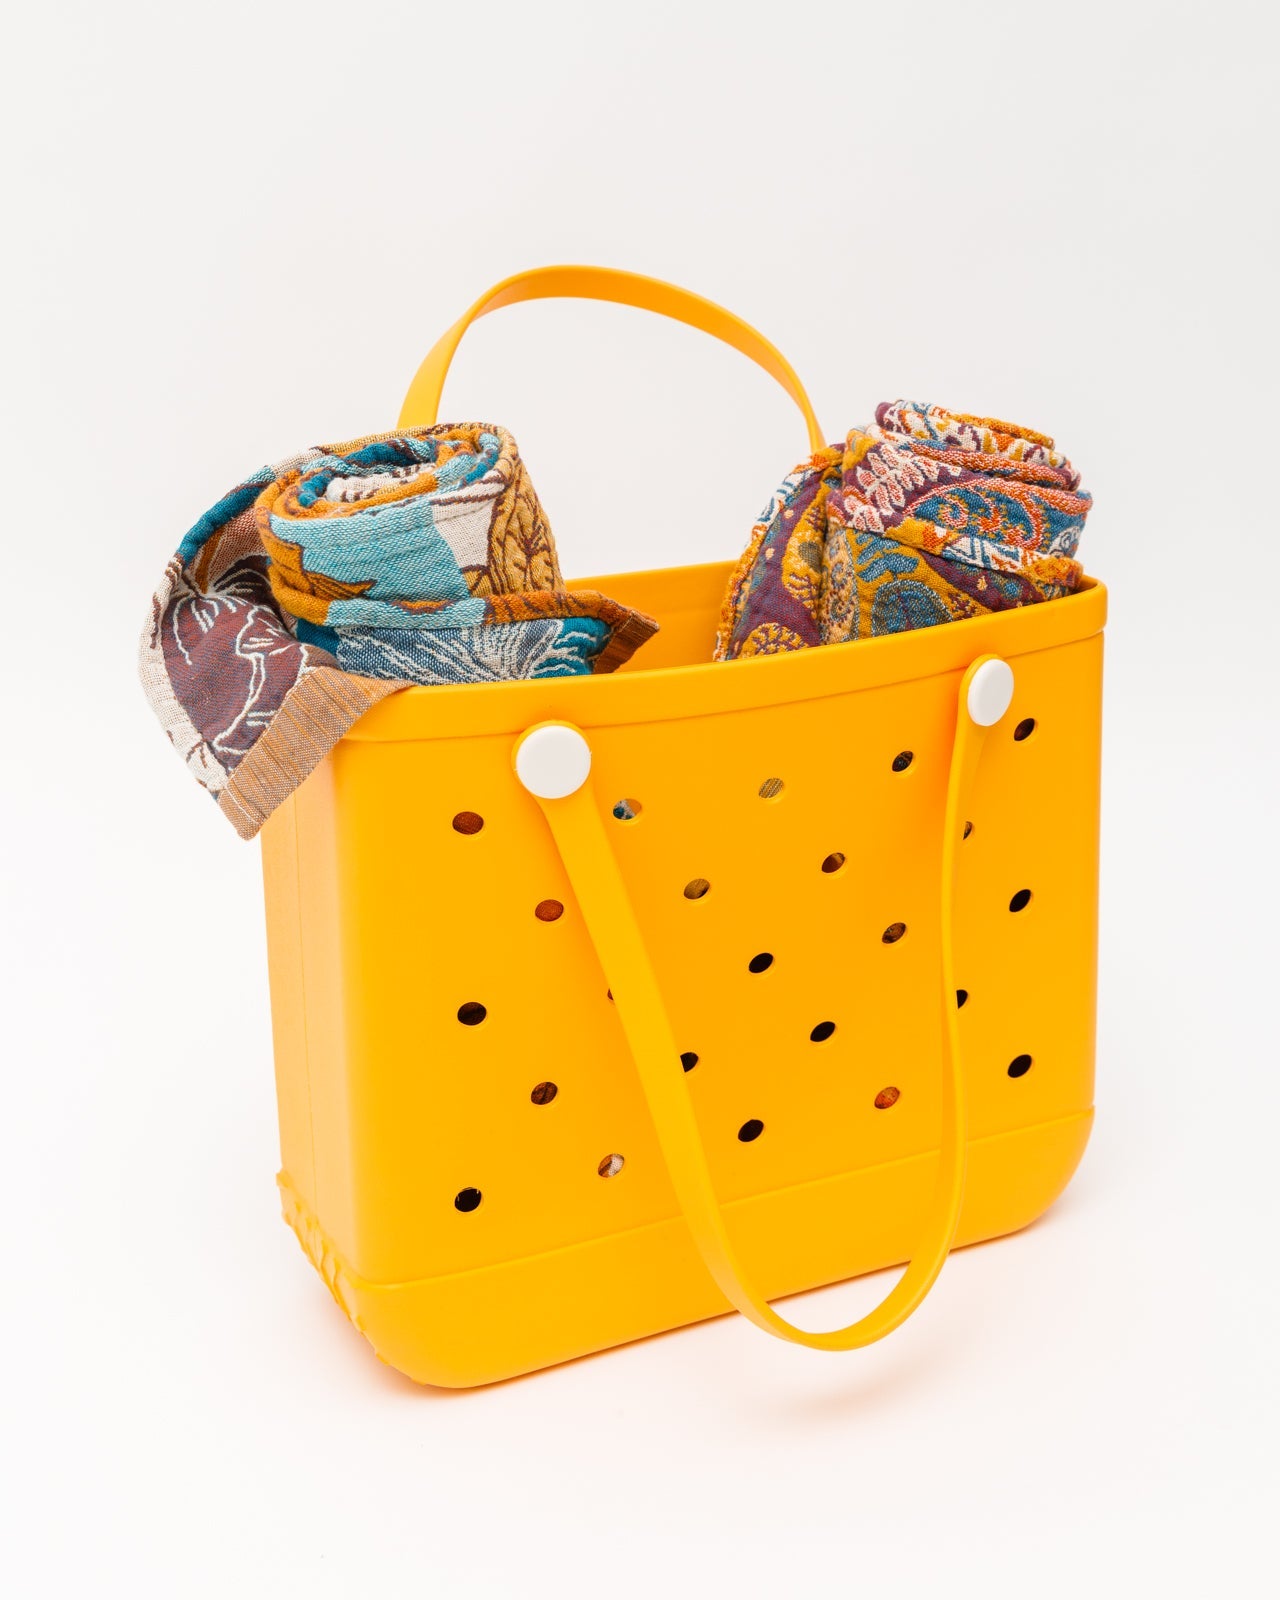 Waterproof Tote Bag in Marigold